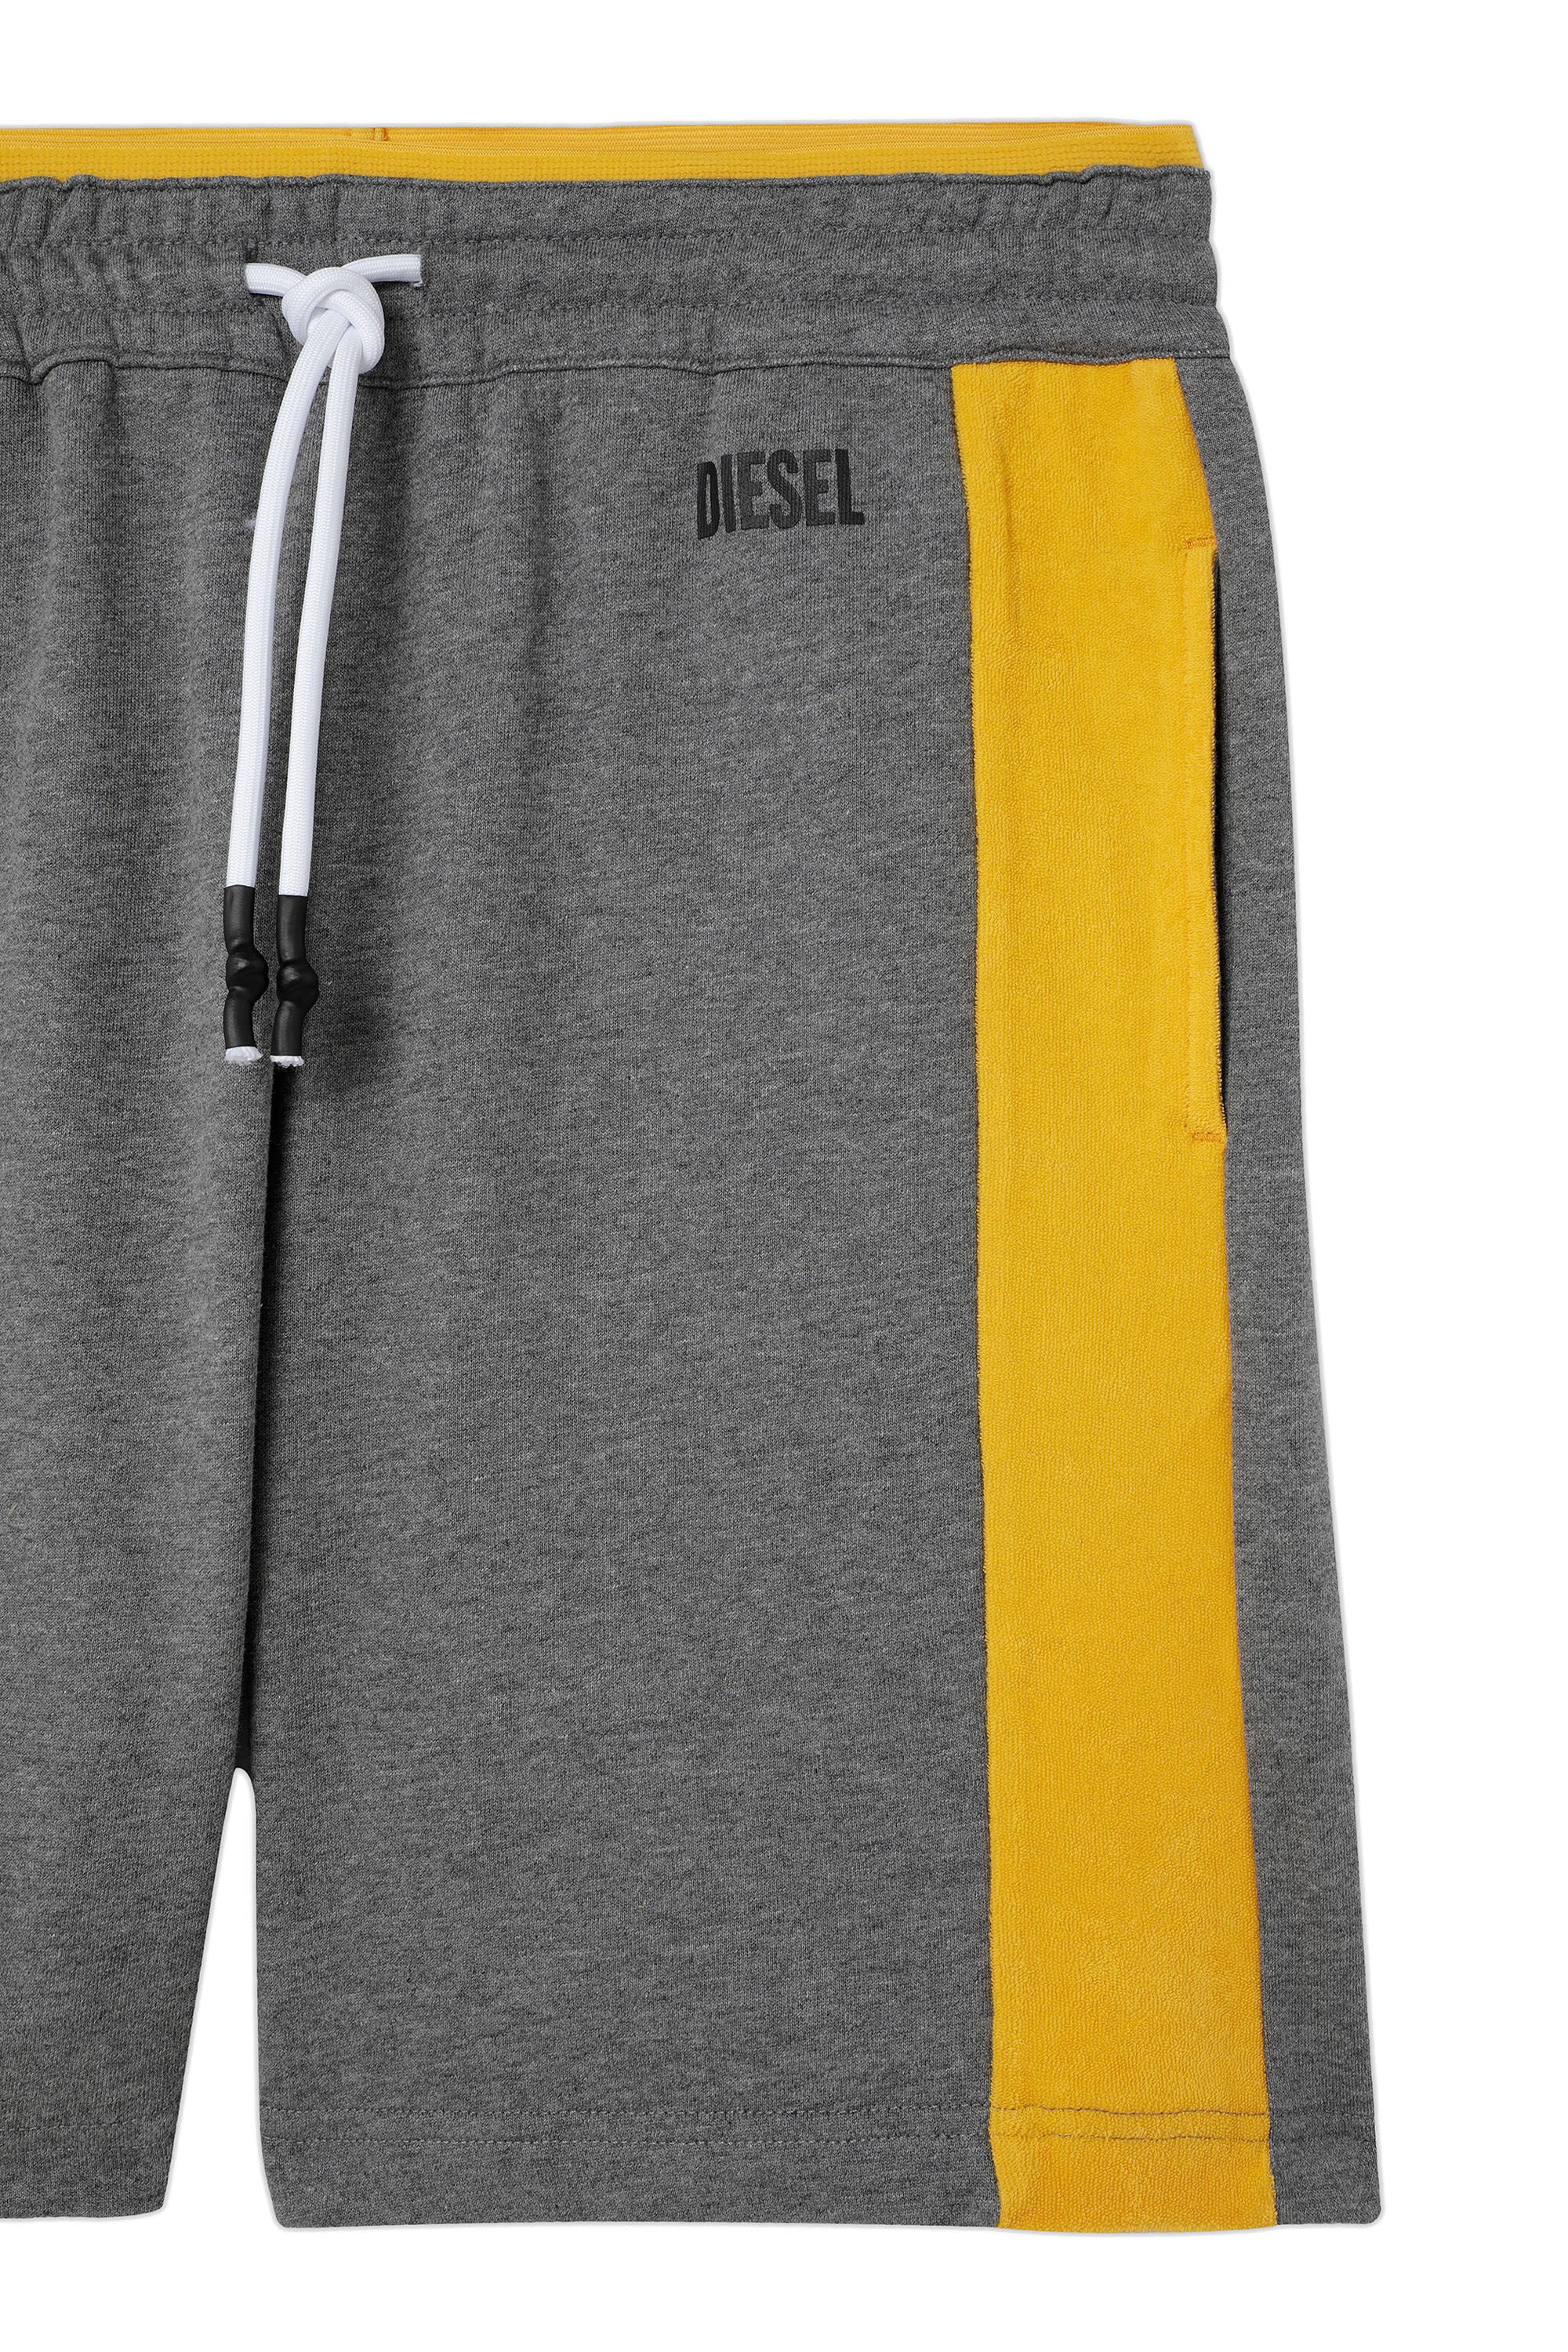 Diesel - UMLB-PAN-SP, Grey/Yellow - Image 2